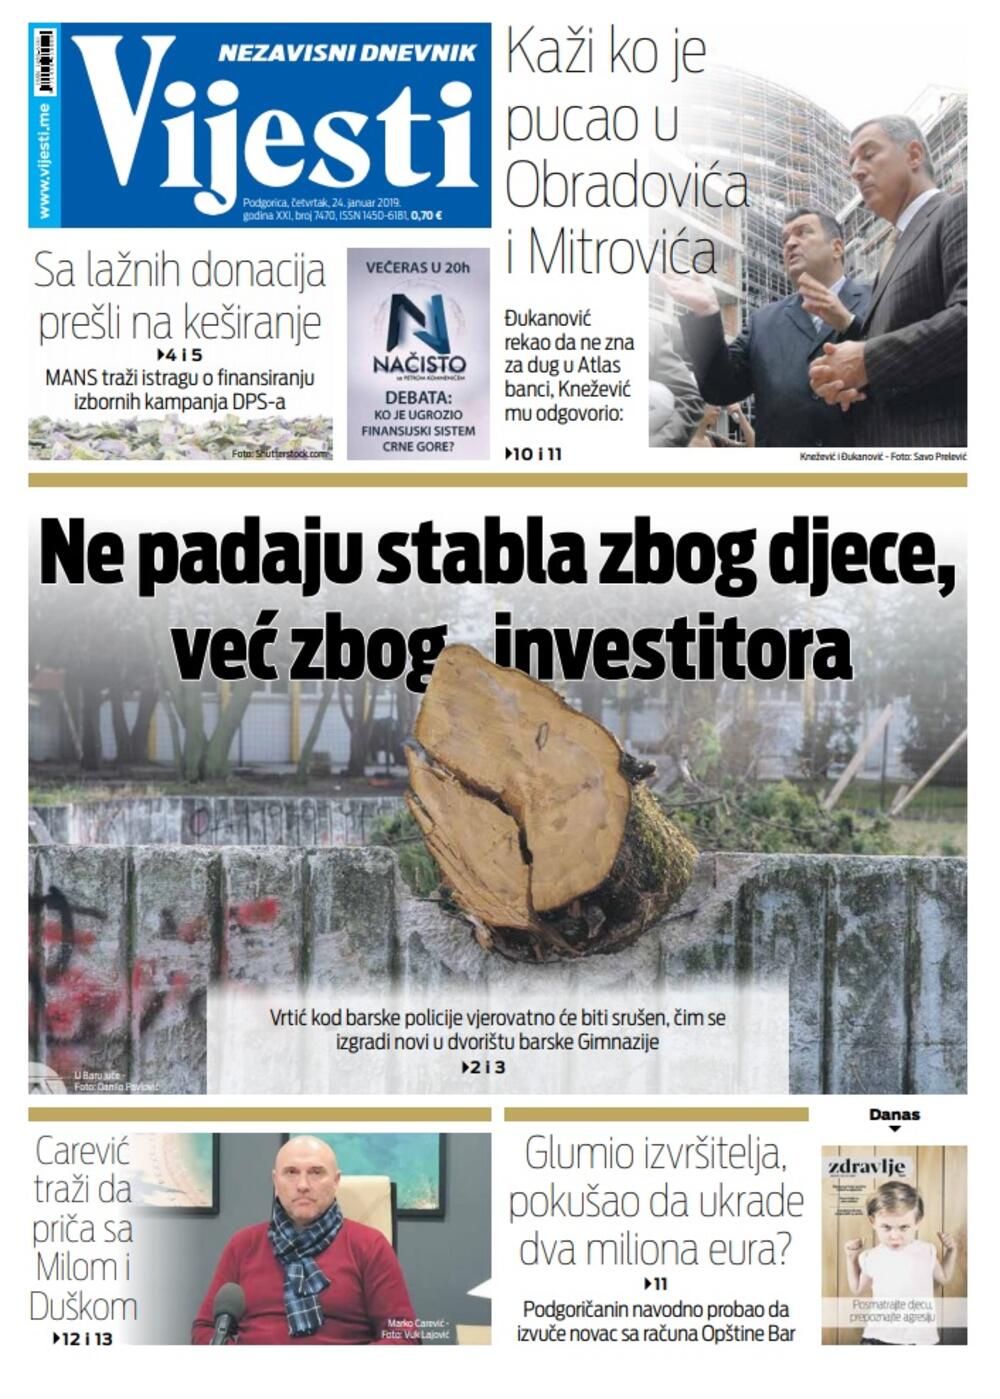 Naslovna strana "Vijesti" za 24. januar